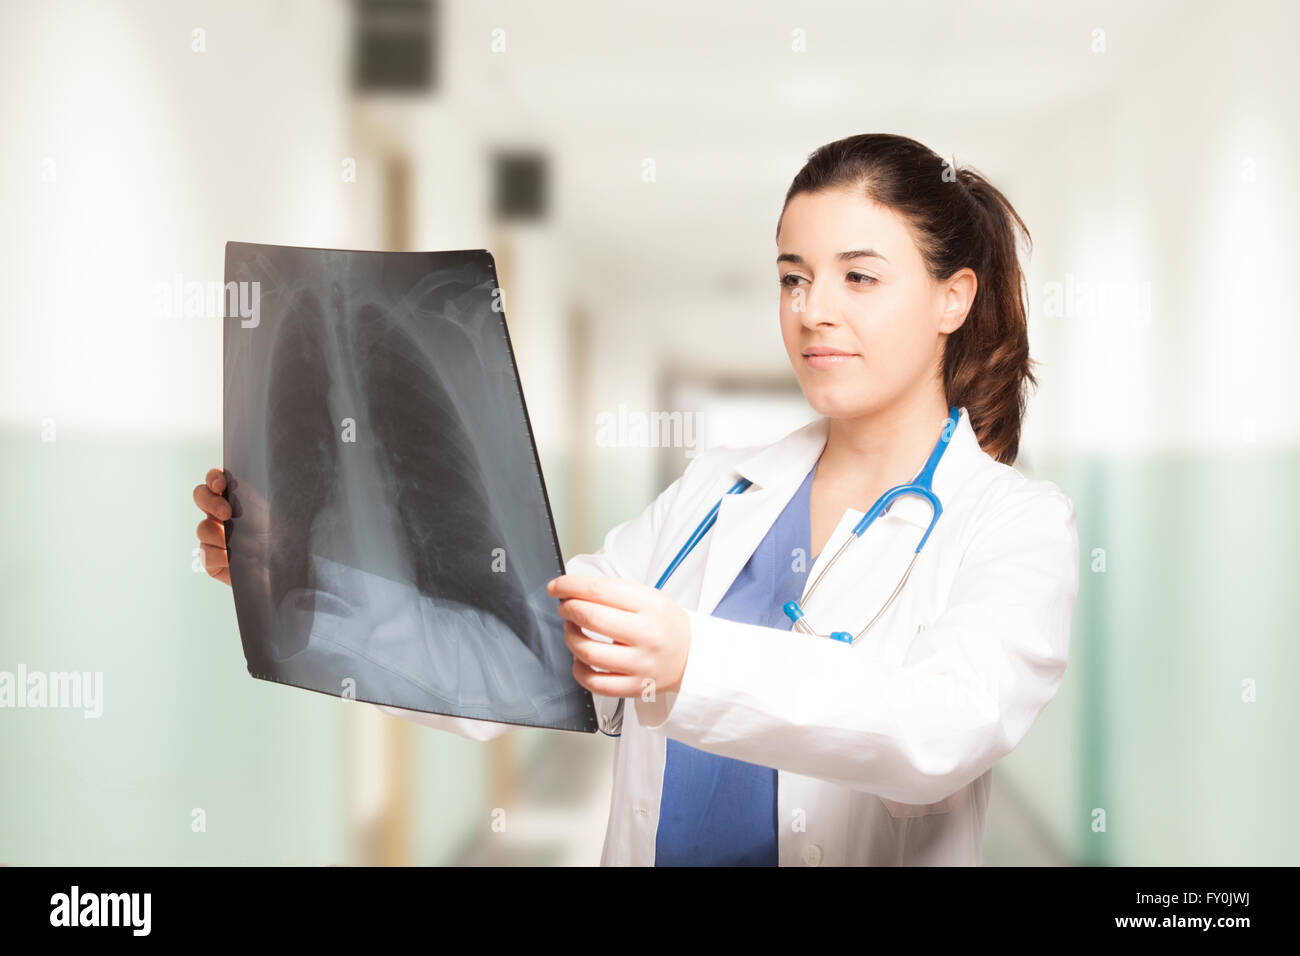 Las hembras jóvenes caucásicos médico mirar una radiografía Foto de stock